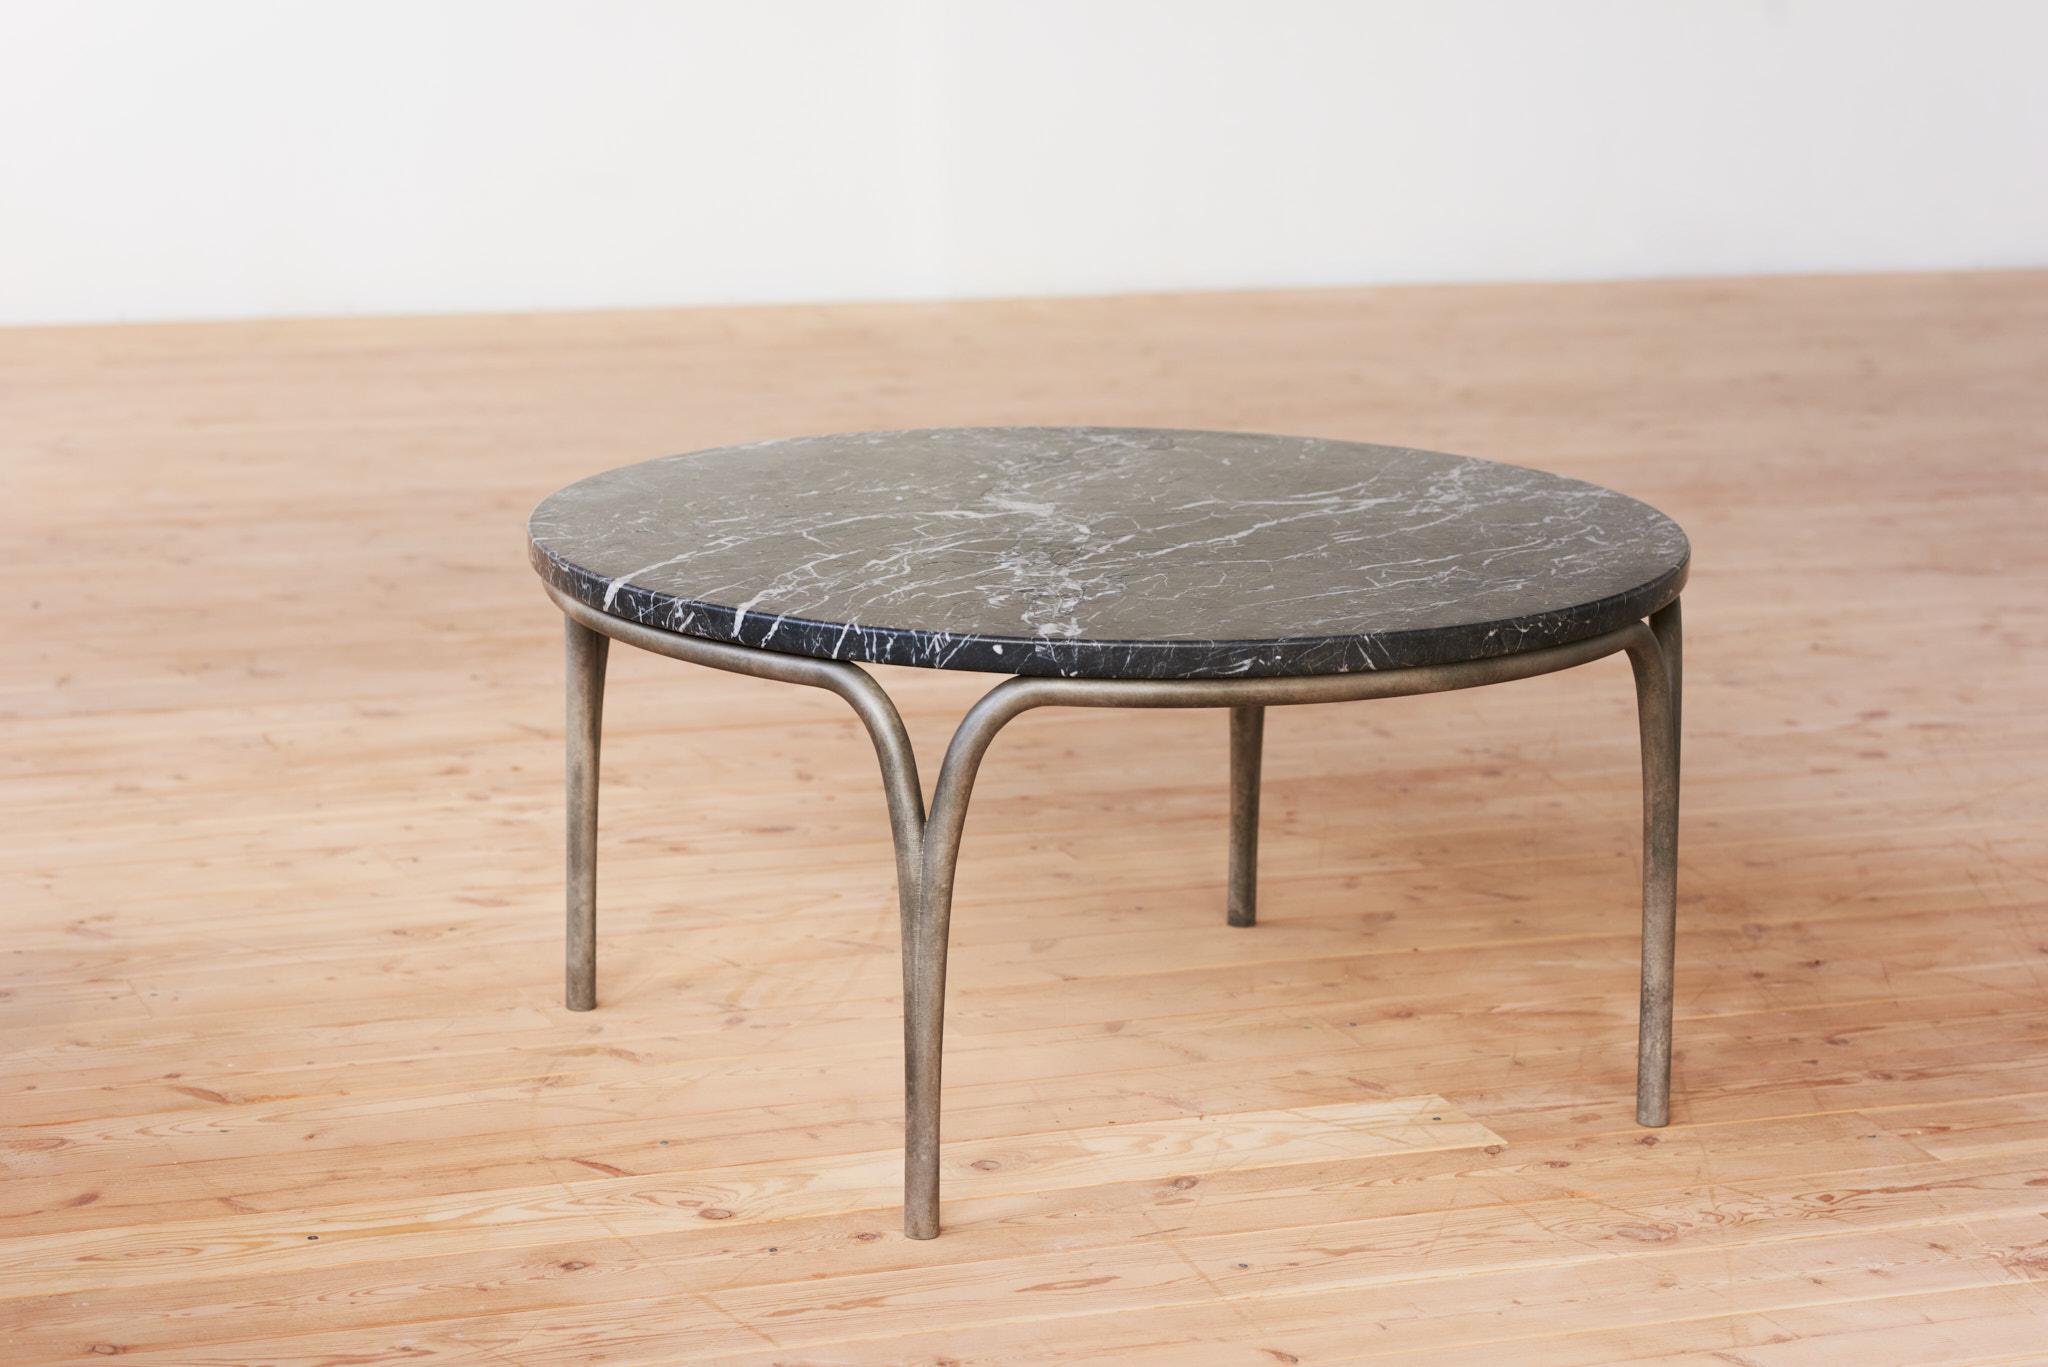 La table basse Cirrus juxtapose la solidité structurelle à la légèreté de la forme. La forme gracieuse des pieds crée une ouverture lorsqu'elle rencontre la masse du plateau de la table, l'espace négatif mettant en valeur les qualités distinctes de